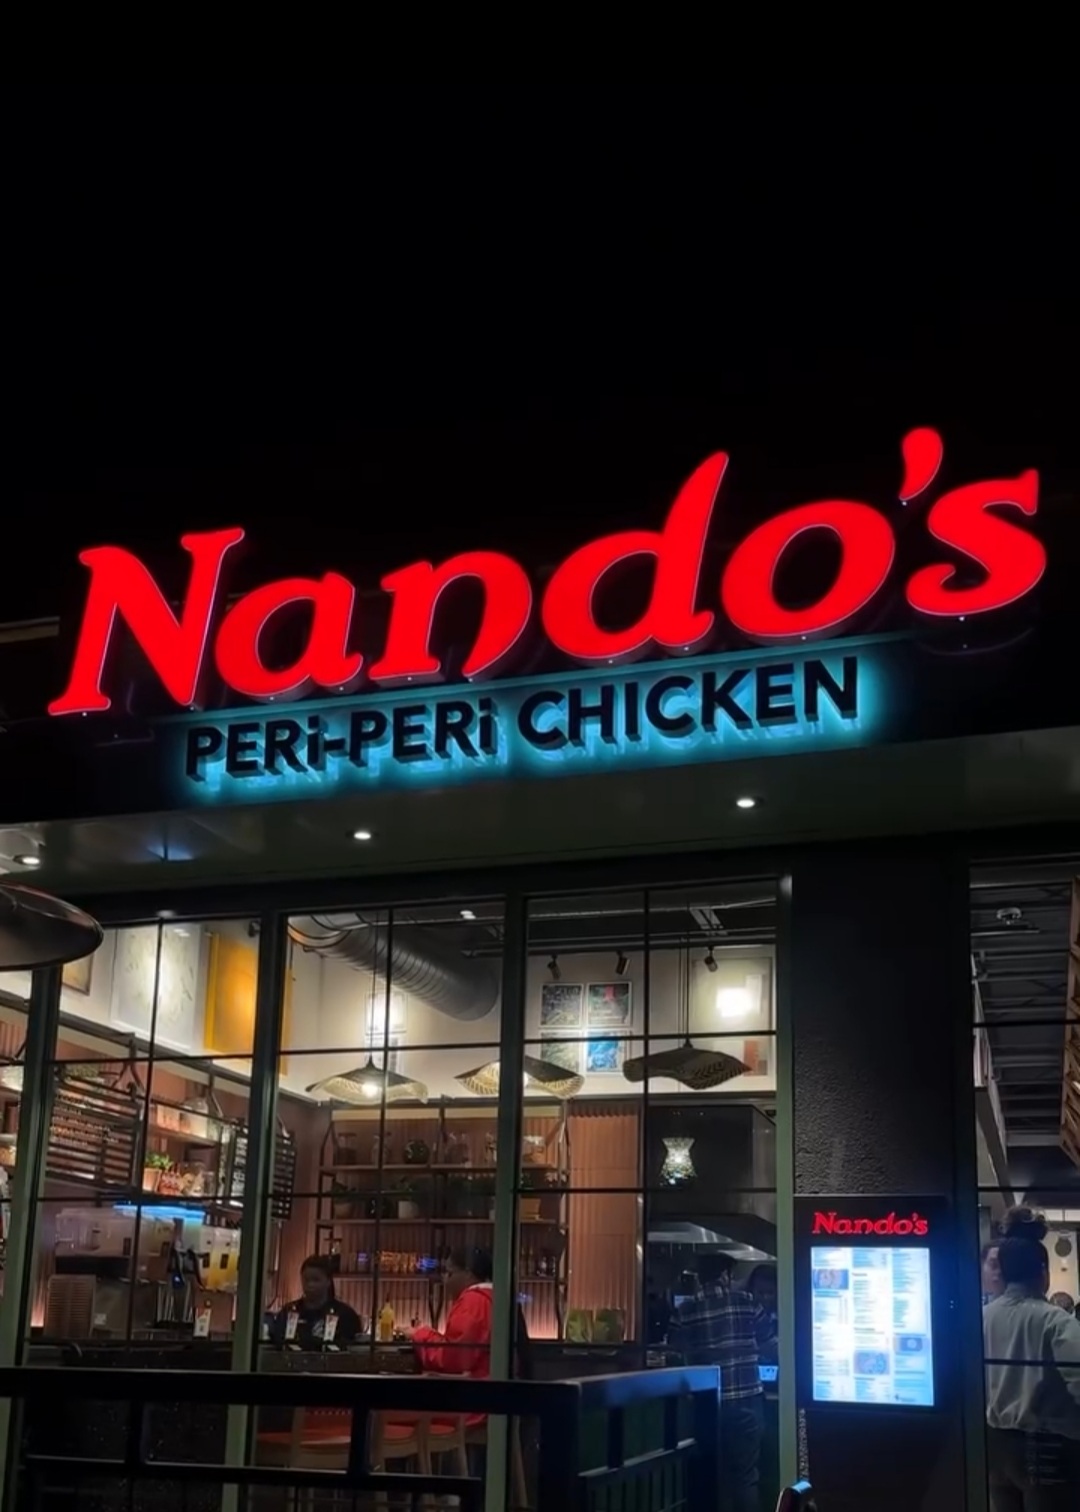 Nando's PERi-PERi Chicken Restaurant